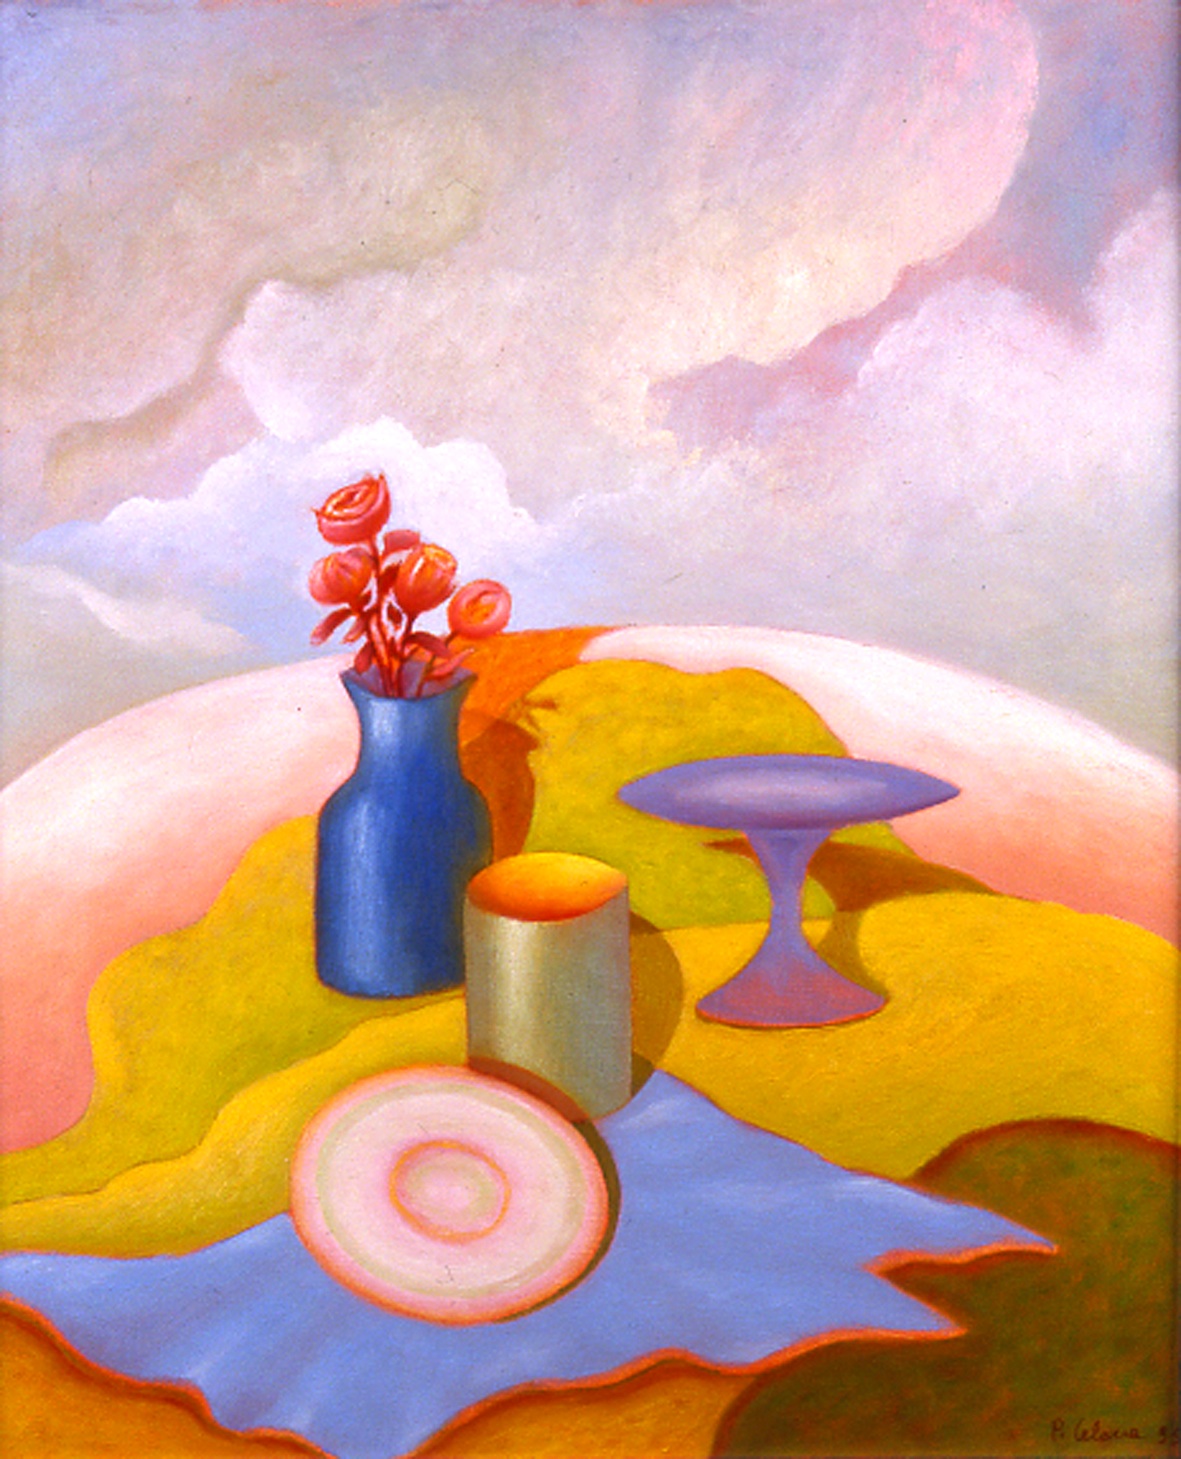 Natura morta, 1995
Olio su tela 60 x 50 cm,
Collezione privata